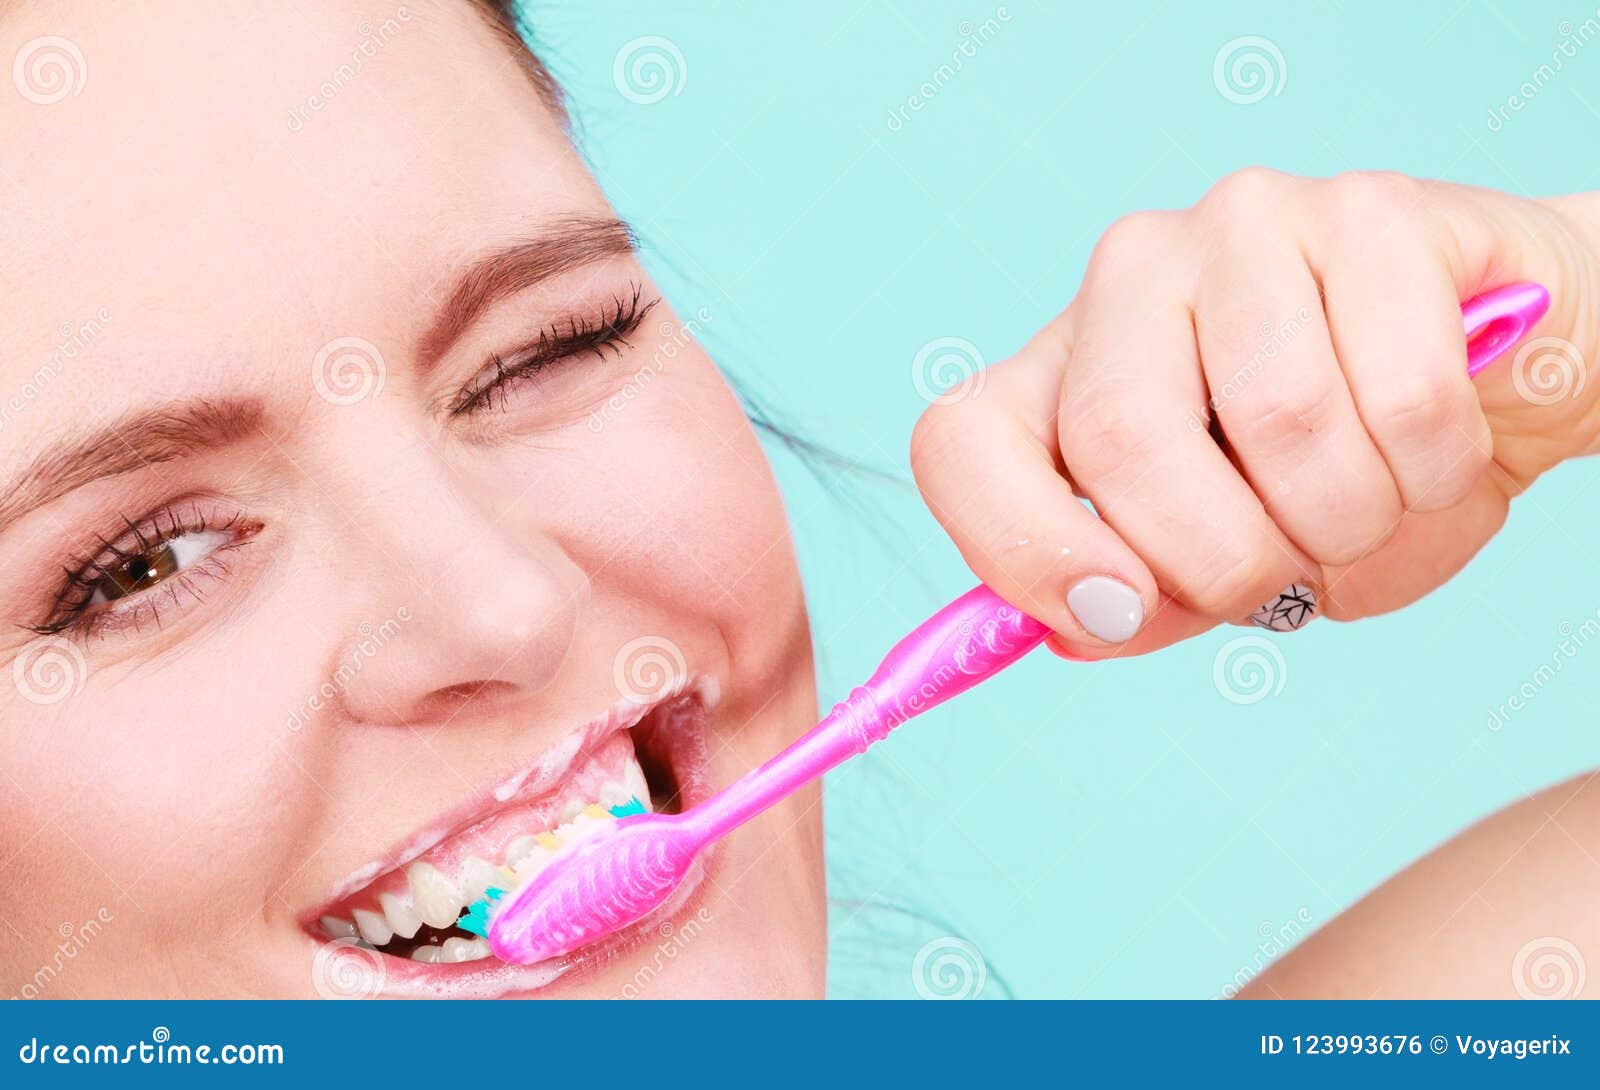 Зубы нужно чистить до завтрака или после. Гигиена полости рта. Девушка с зубной щеткой. Чистка зубов после завтрака. Гигиена полости рта и бактерии.